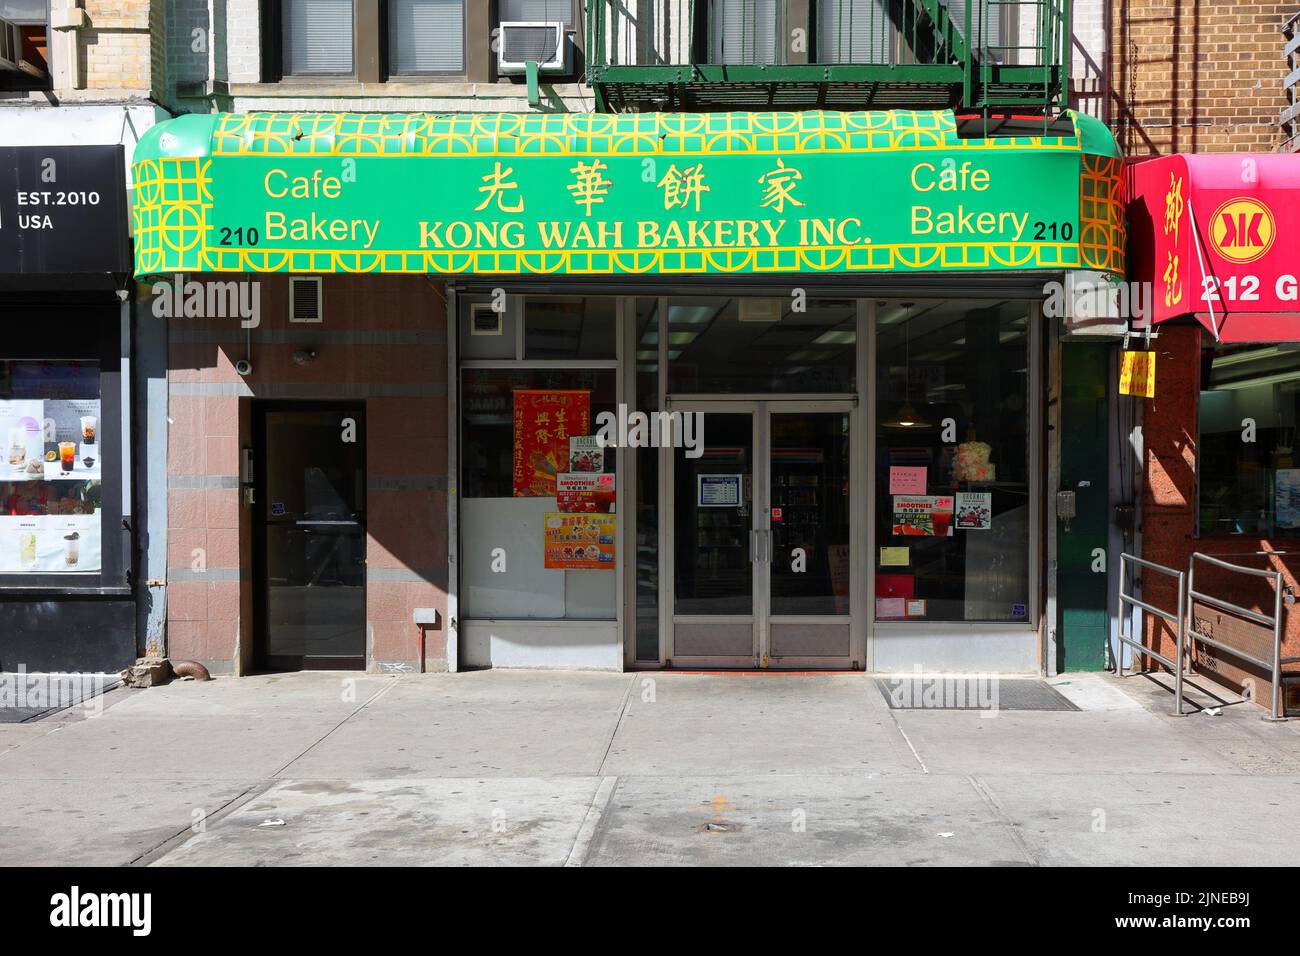 Kong Wah Bakery, 光華餅家, 210 Grand St, New York, NY. Façade extérieure d'une boulangerie chinoise dans le quartier chinois de Manhattan. Banque D'Images